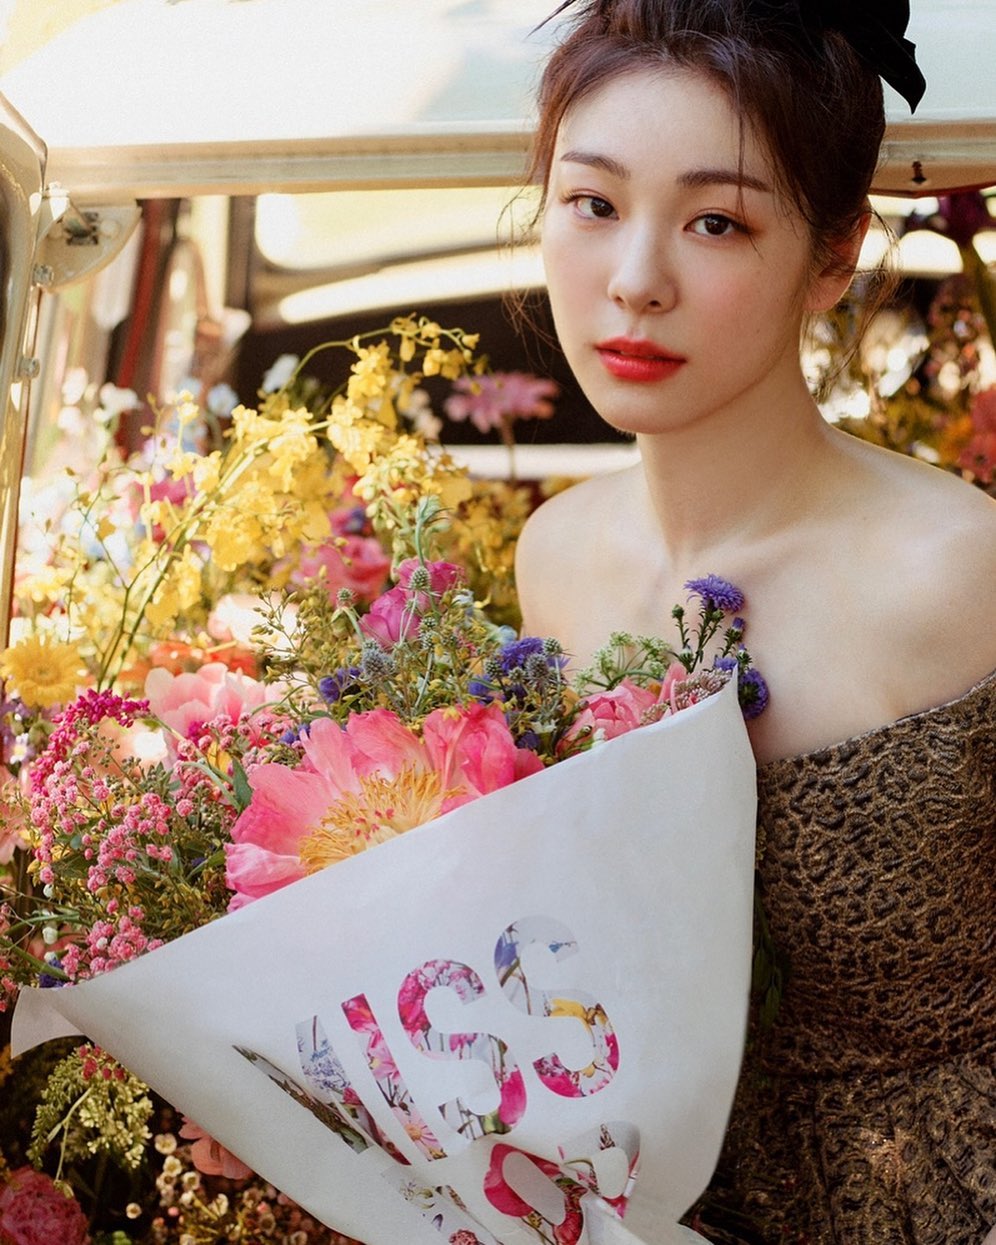 Khoảnh khắc chụp cùng hoa Dior gửi tặng của Kim Yuna từng gây sốt mạng xã hội.